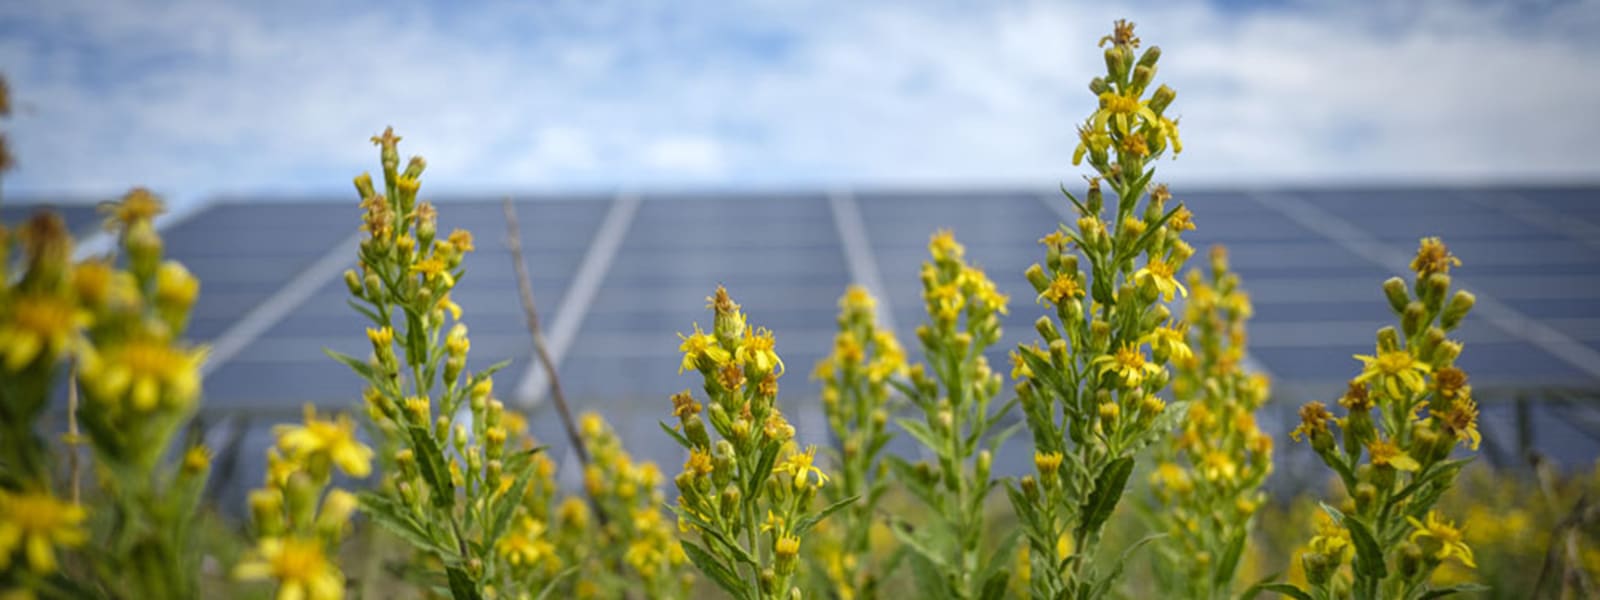 Apiculture, transhumance des abeilles et pastoralisme : le parc solaire de La Verdière joue la carte de la multifonctionnalité